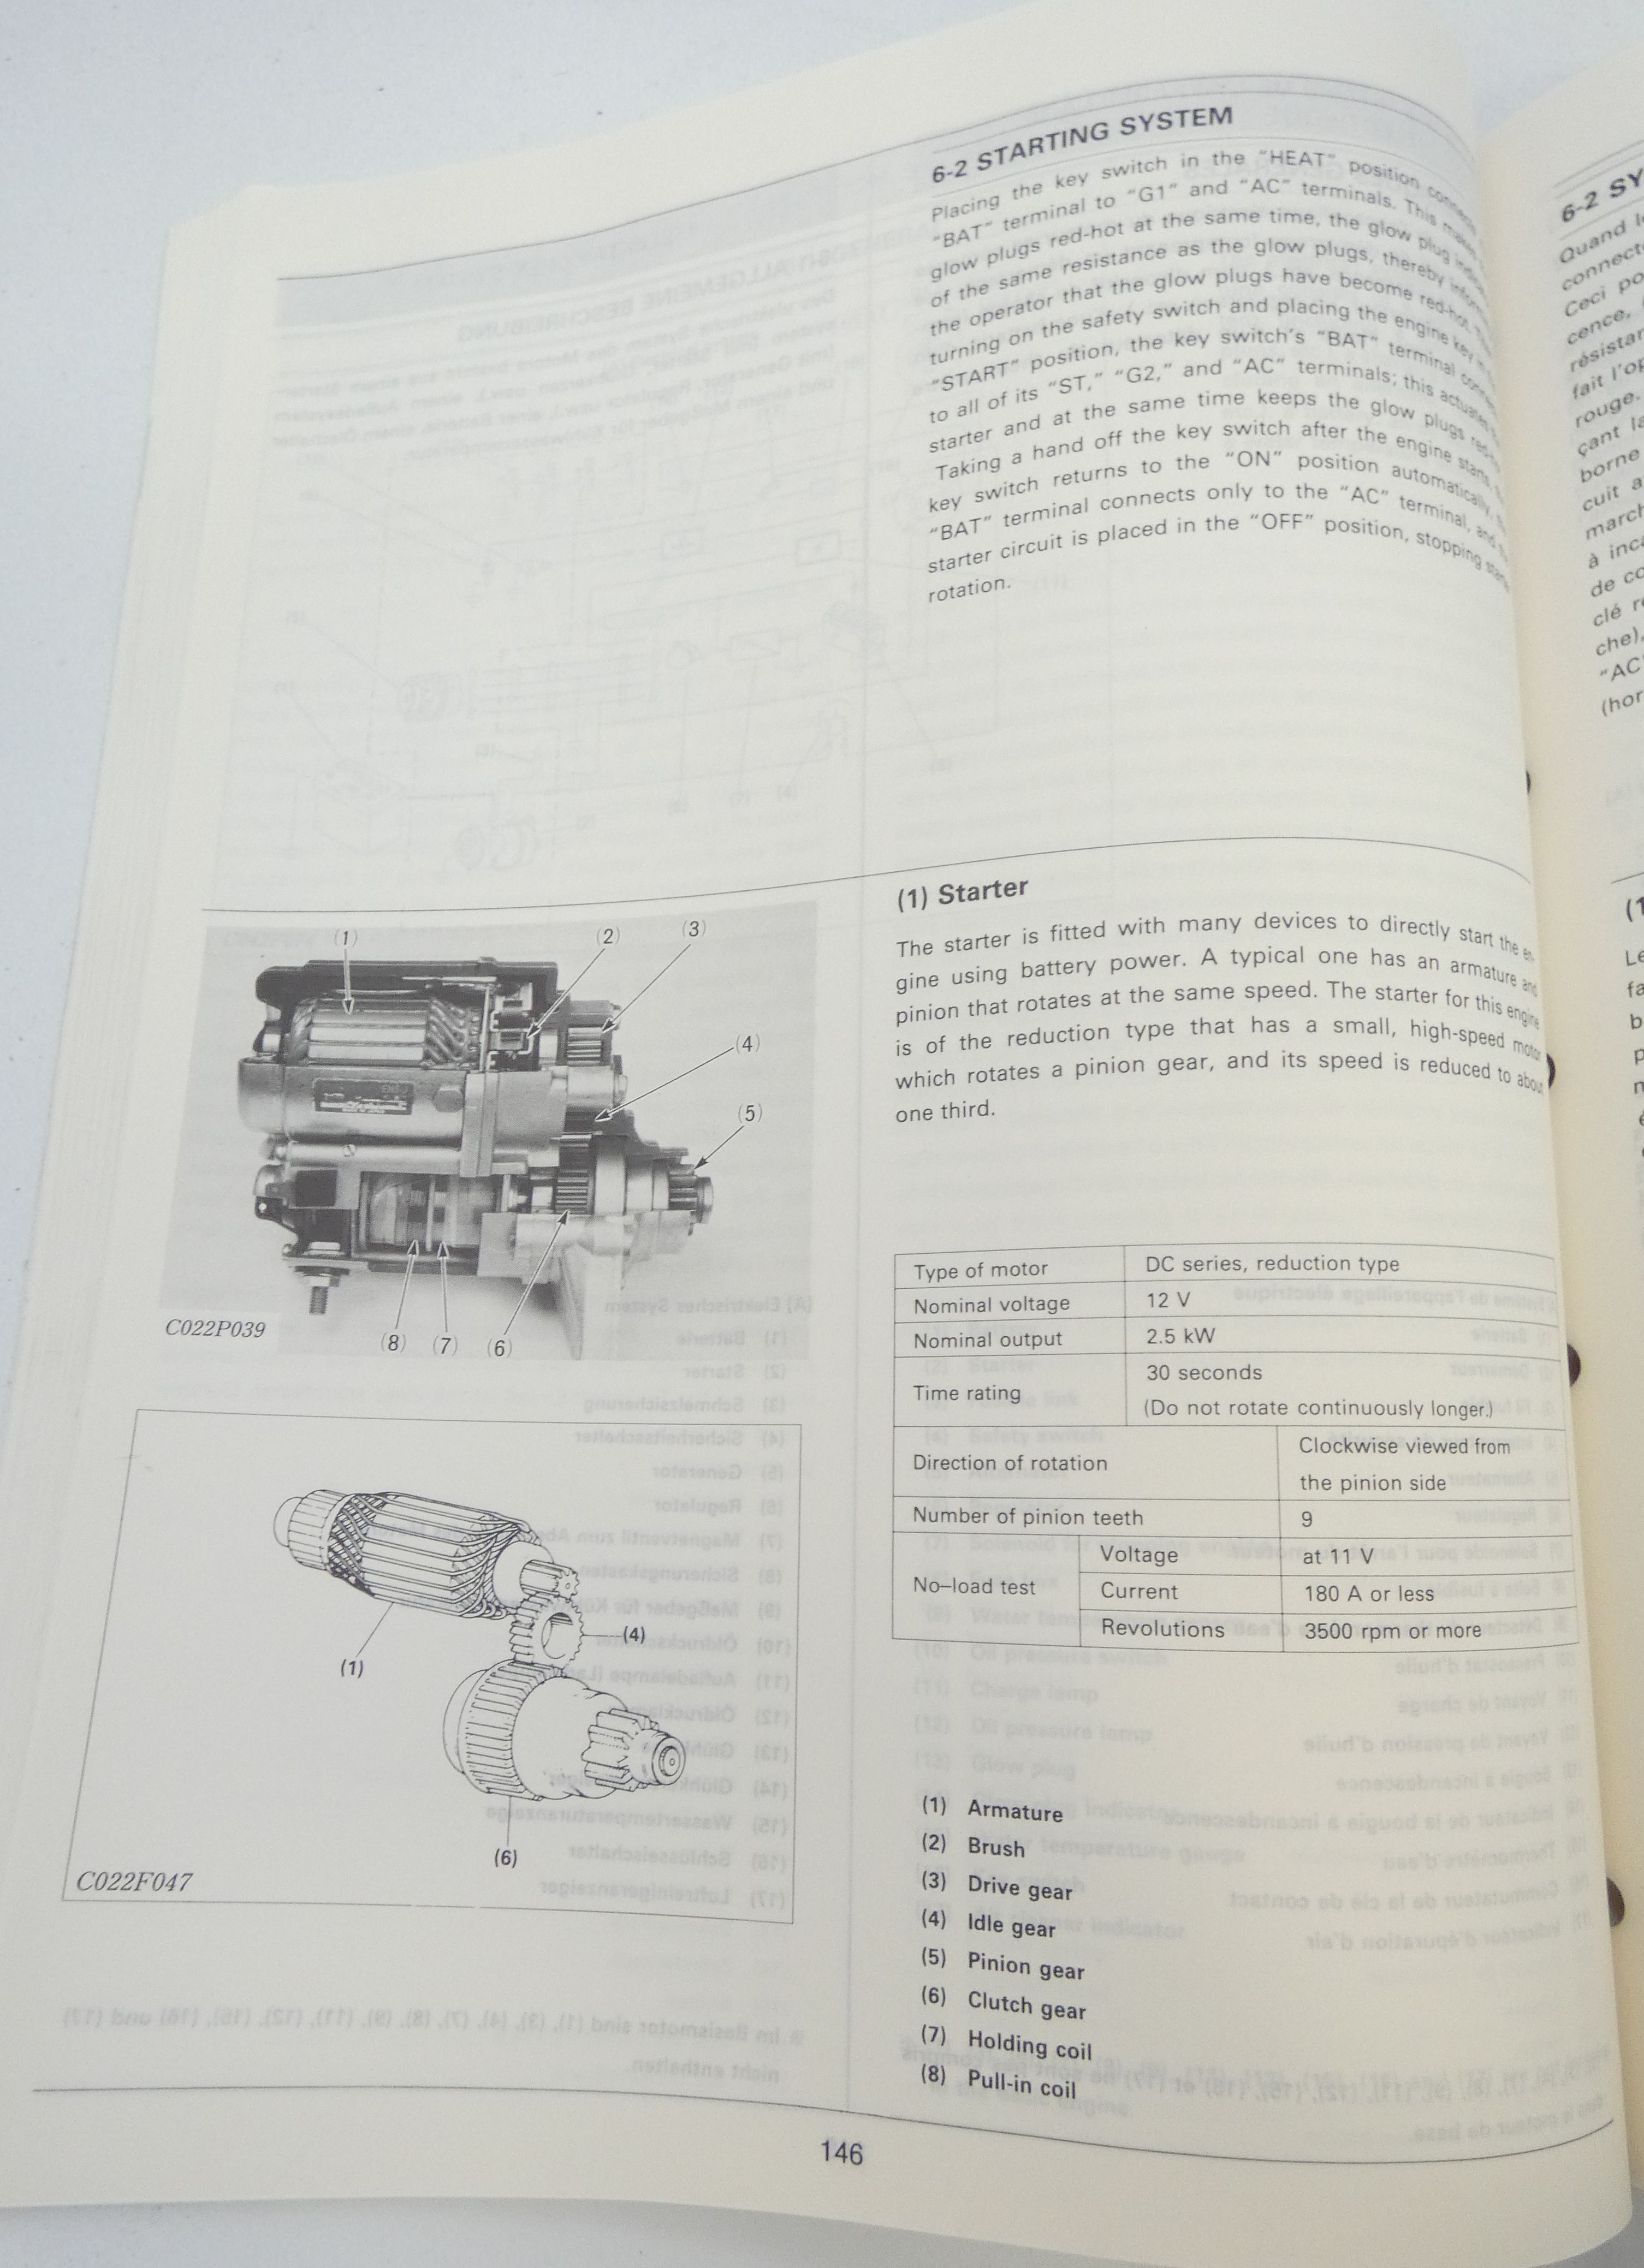 Kubota D3000-B, D3200-B, V4000-B, V4300-B diesel engines workshop manual